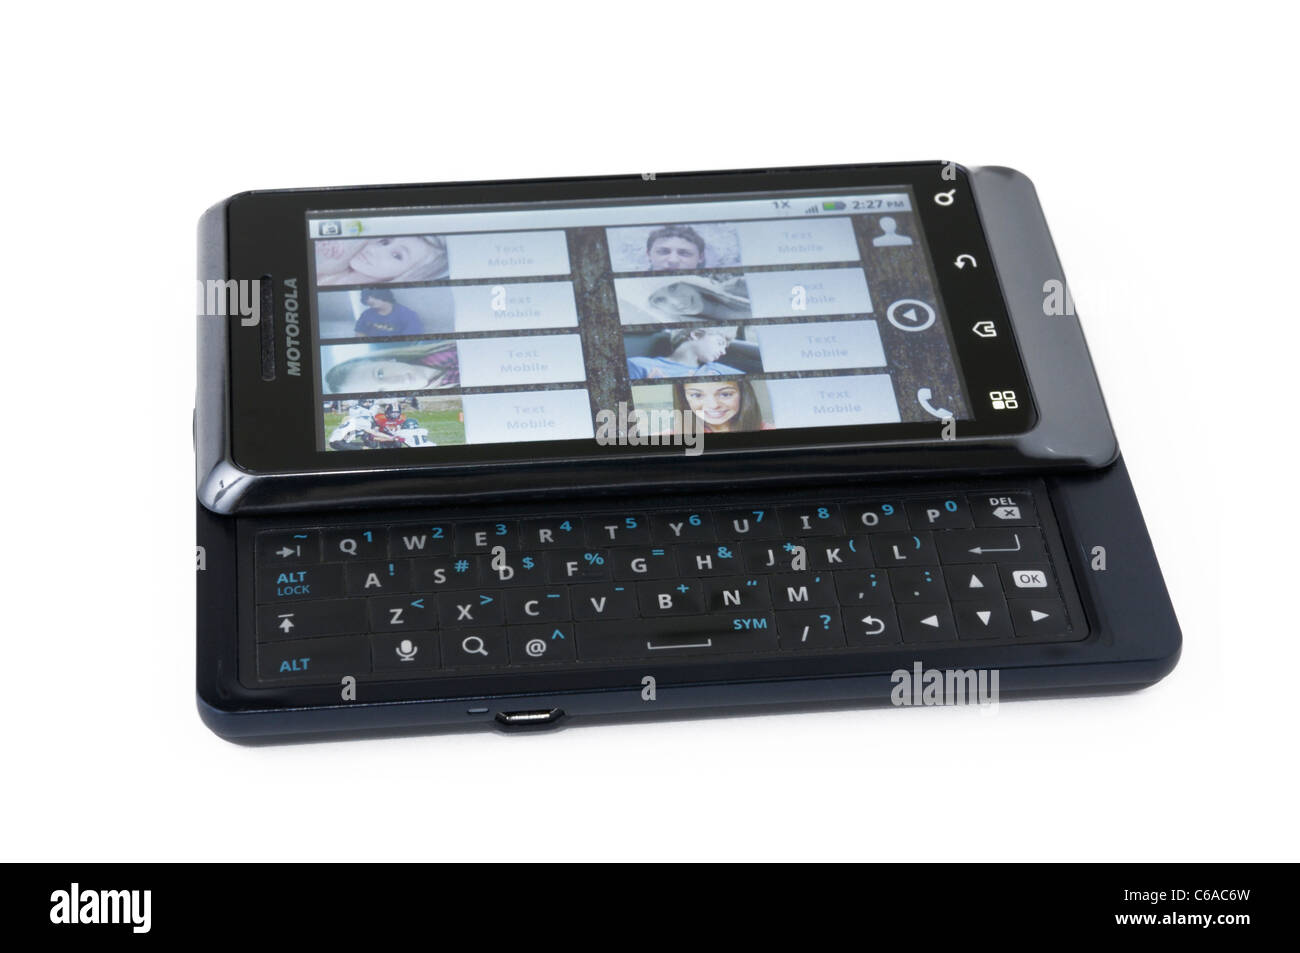 Droid 2 Smartphone mit Android-Betriebssystem. Fotos von Kontakten auf dem Bildschirm Stockfoto